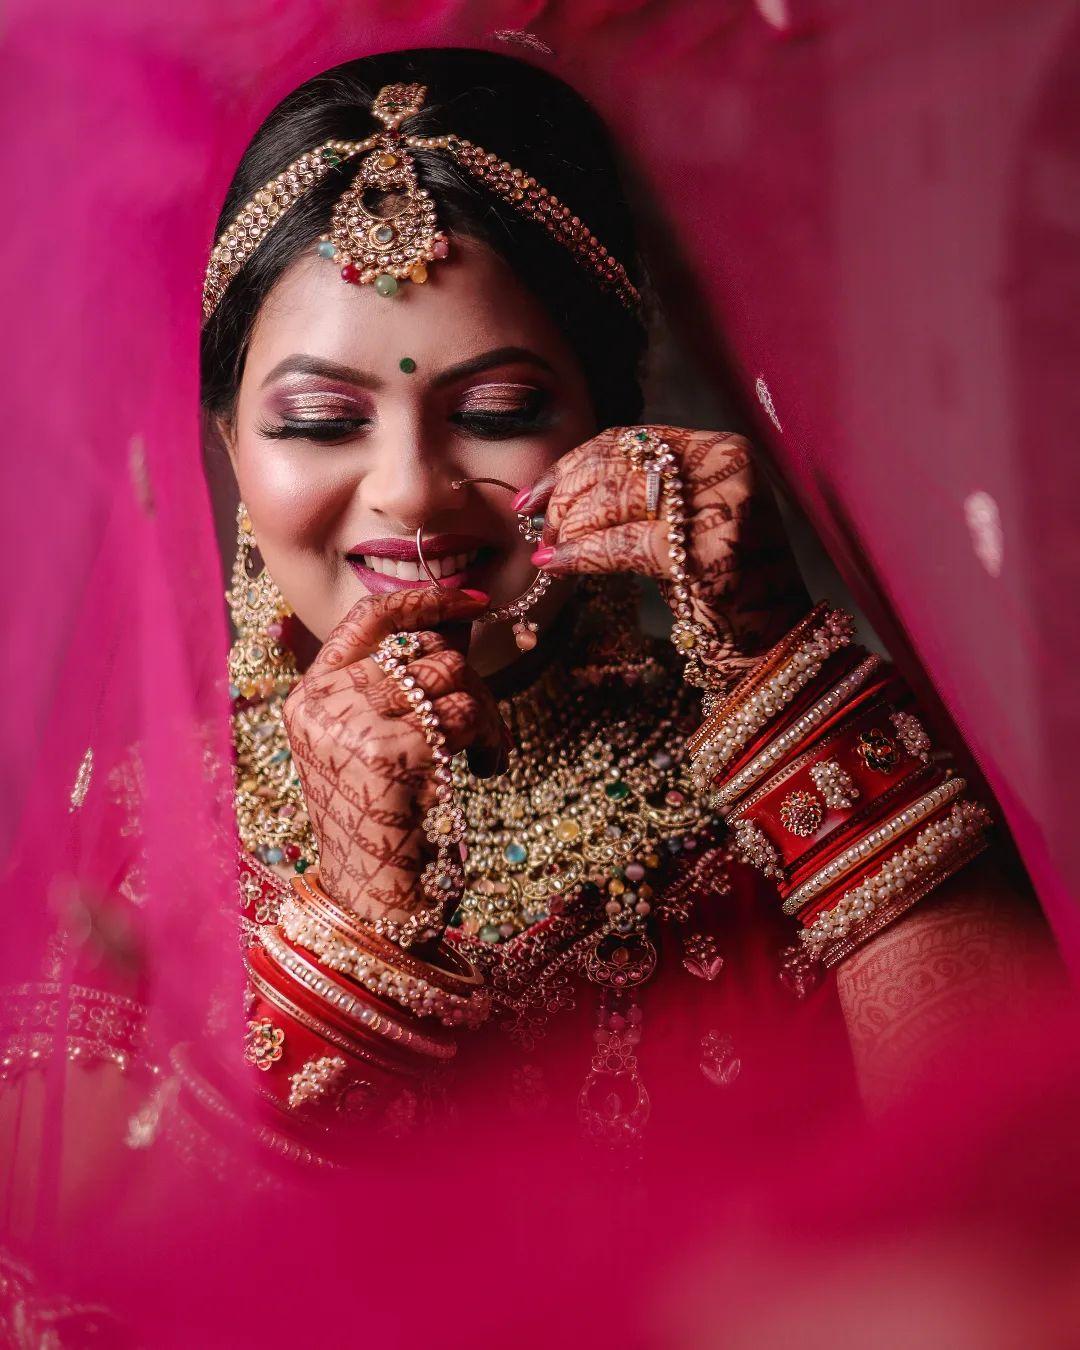 Abhira | Bride groom photoshoot, Indian wedding photography poses, Bride photography  poses